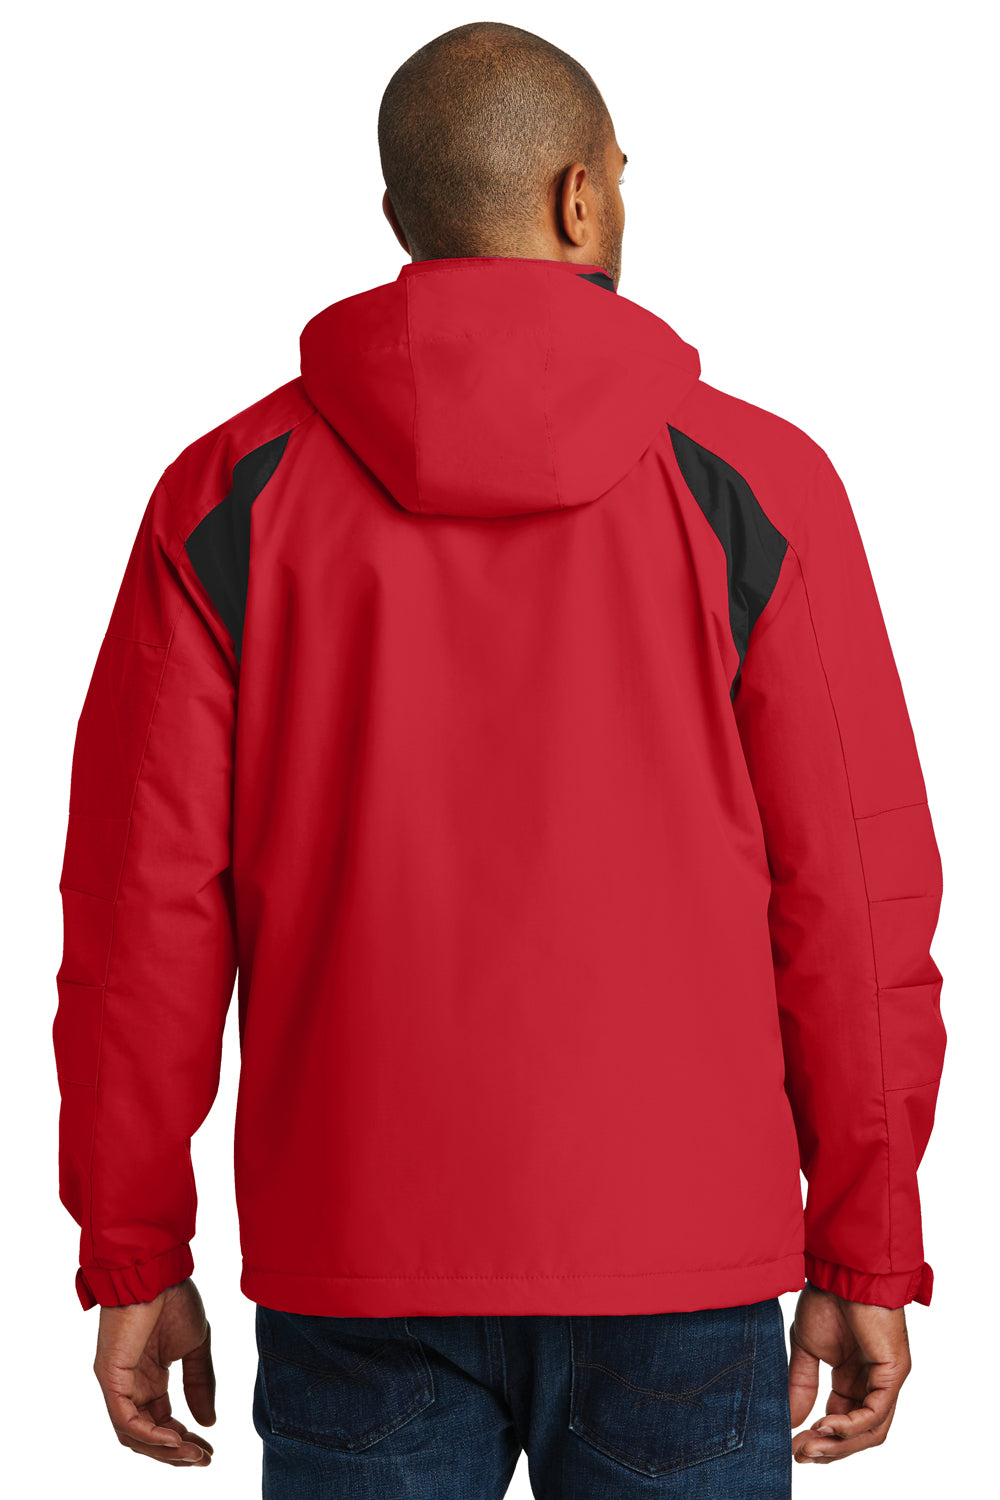 Port Authority J304 Mens All Season II Waterproof Full Zip Hooded Jacket Red/Black Back